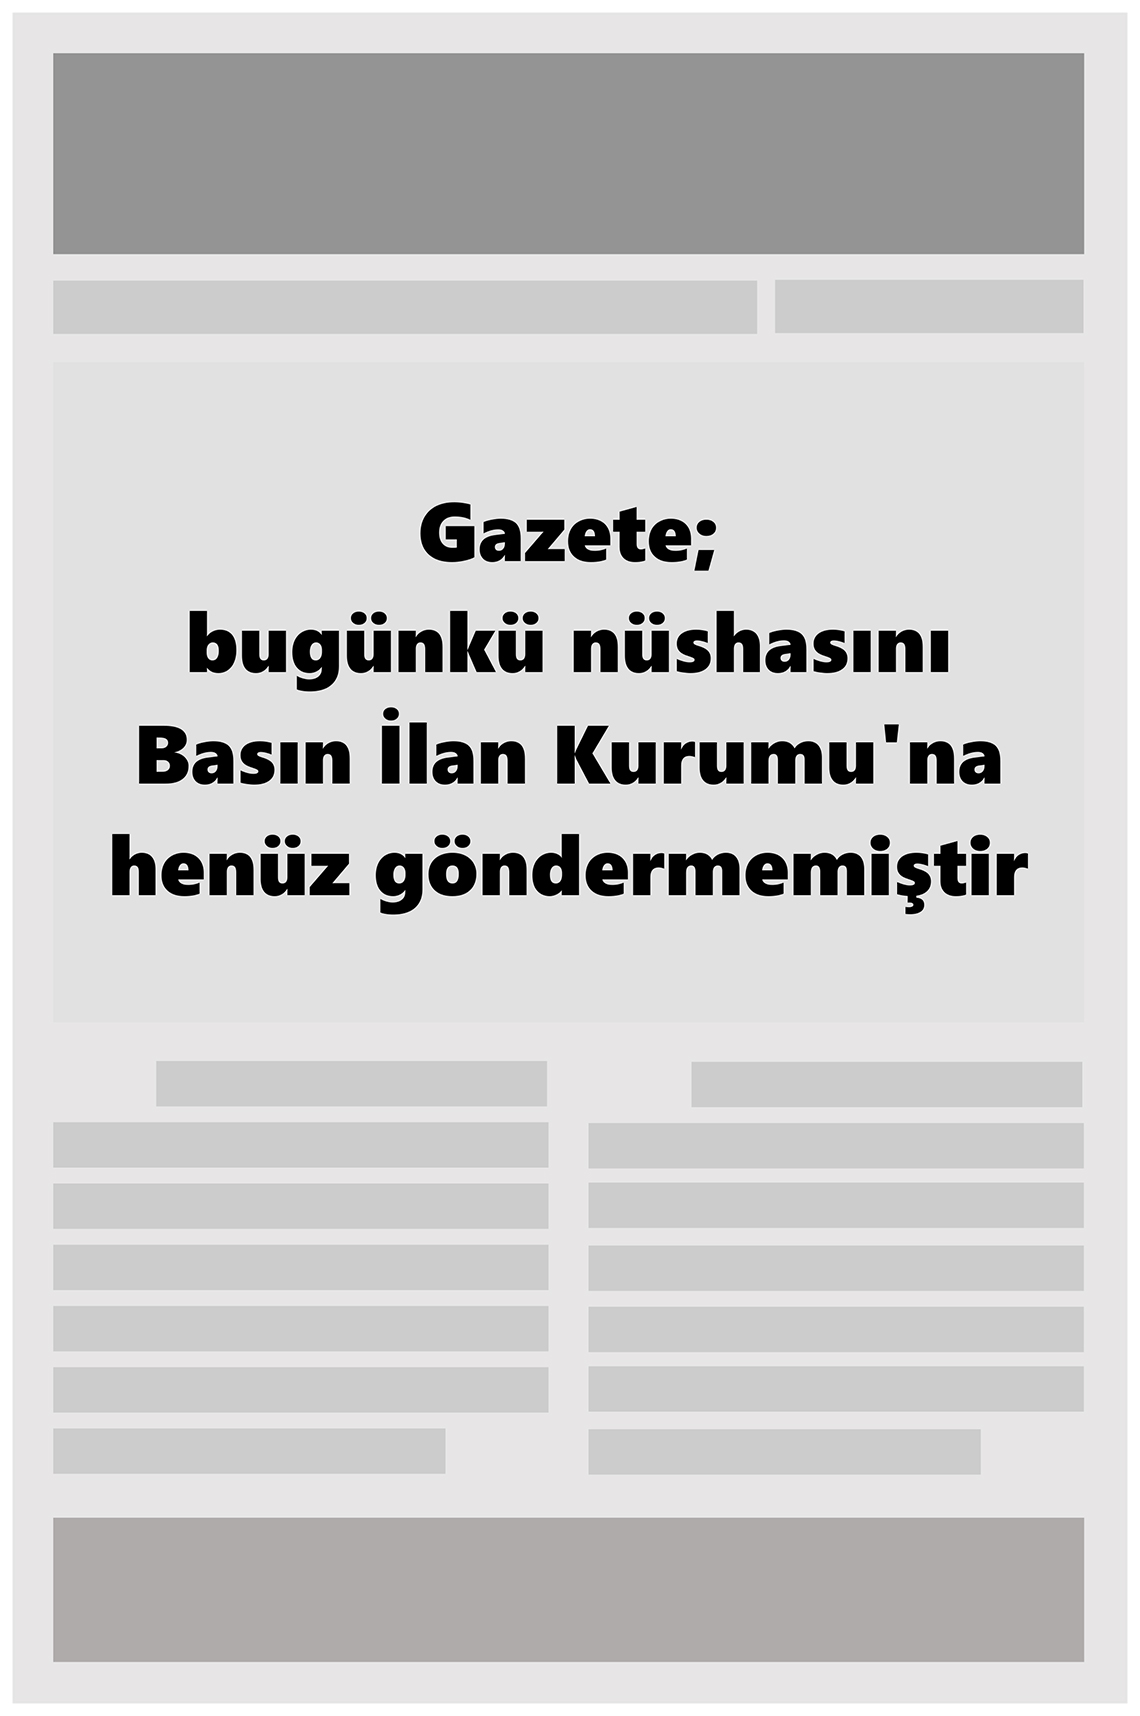 25 Eylül 2022 Büyükşehir Merhaba GAzetesi Gazete Manşeti